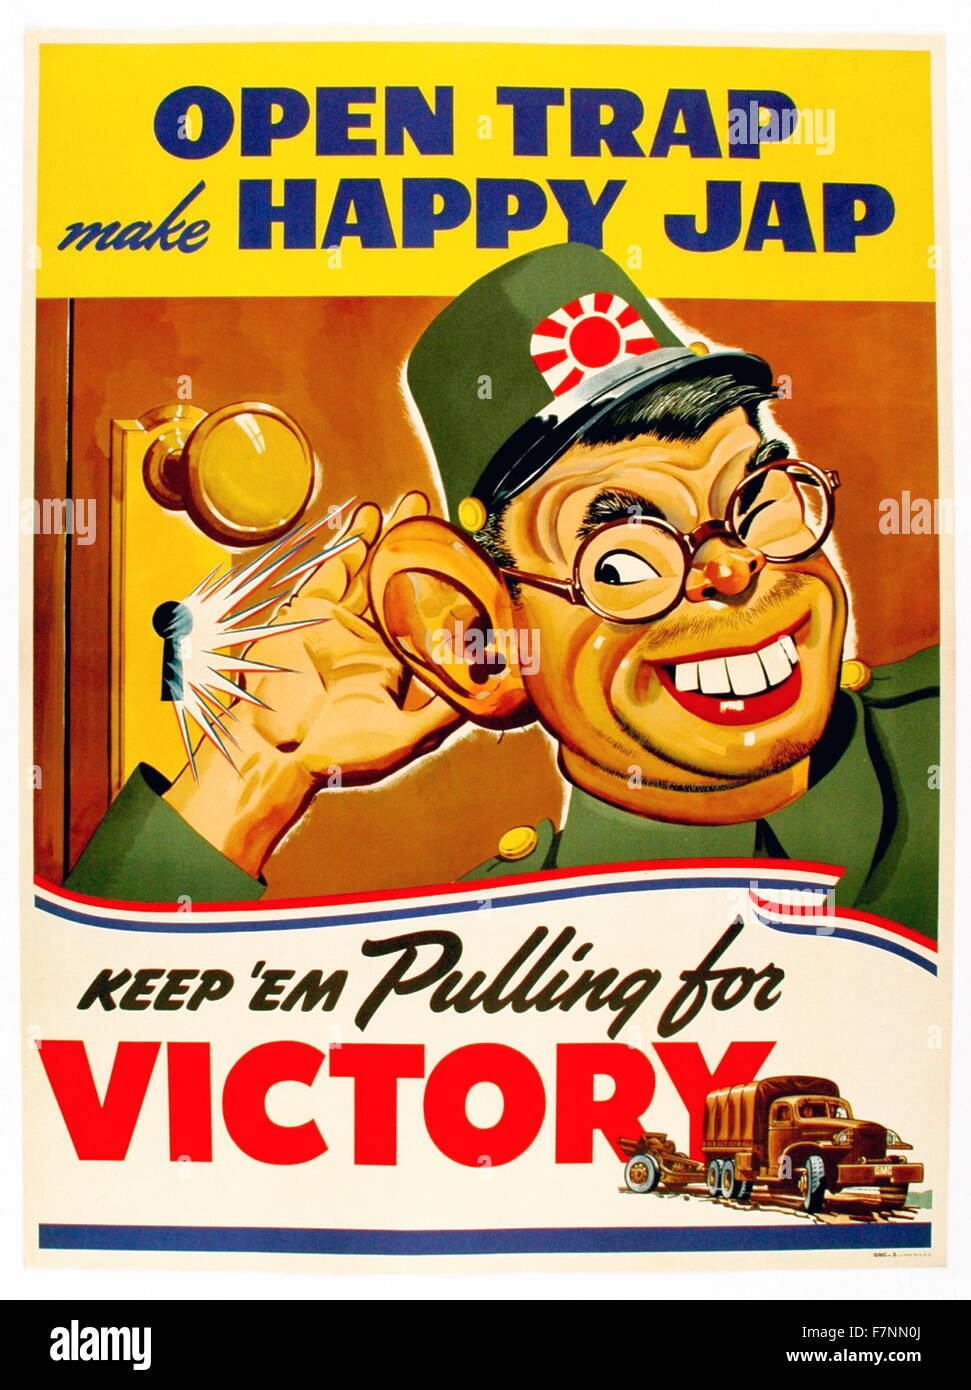 Propagandaplakat aus dem zweiten Weltkrieg. Plakat "lose Talk" (reden, Strategien oder Truppenbewegungen etc.) besonders vor japanischen Menschen warnen. Titel lautet "Offene Falle Make Happy Jap" Stockfoto